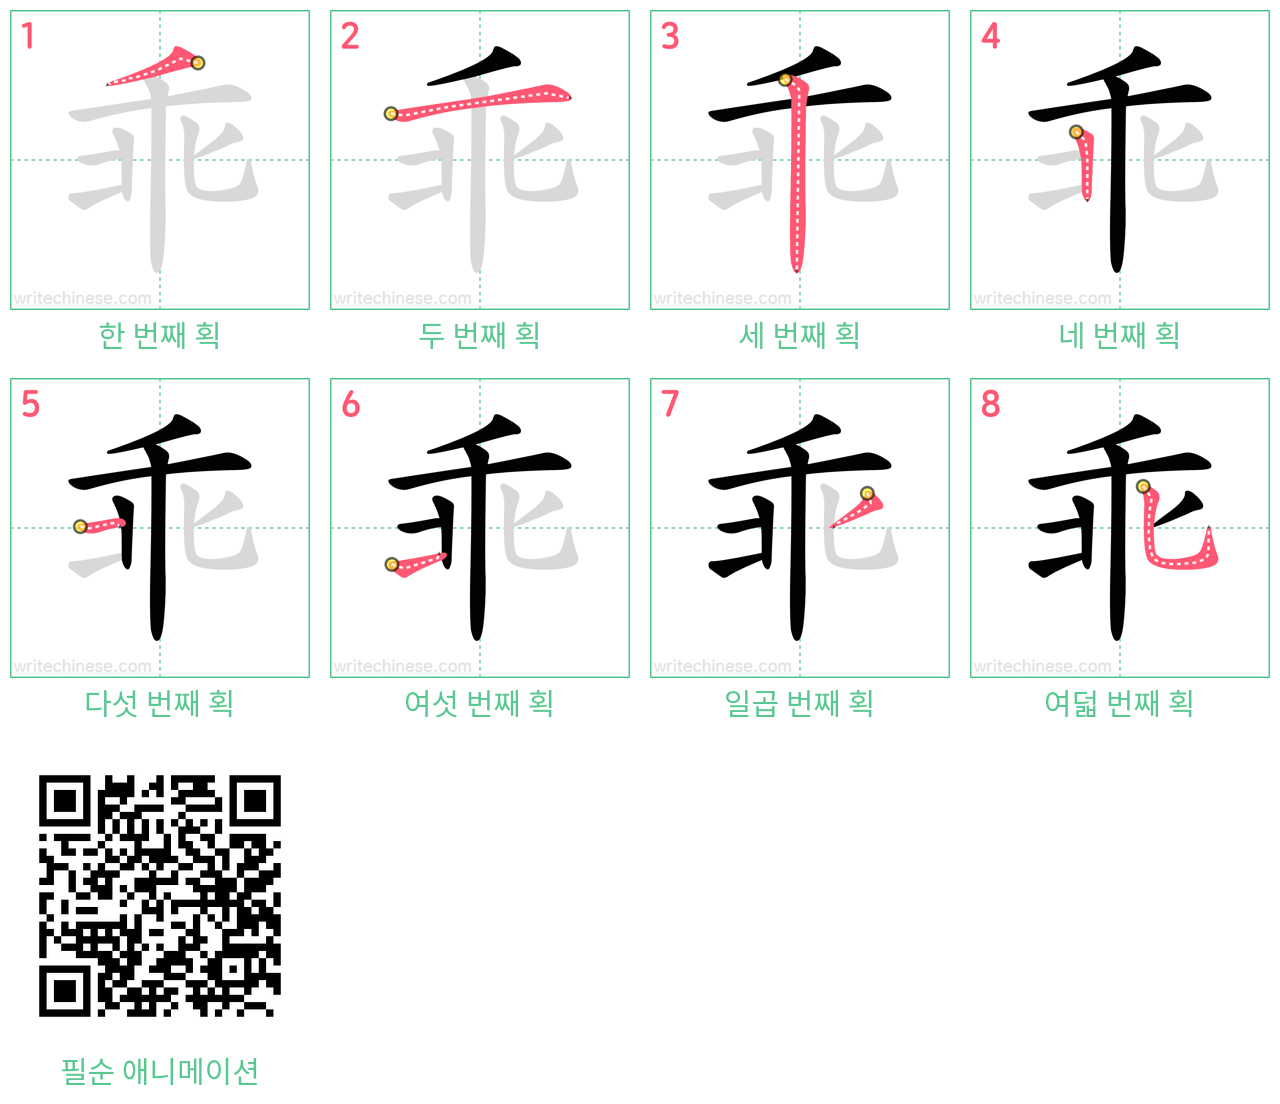 乖 step-by-step stroke order diagrams